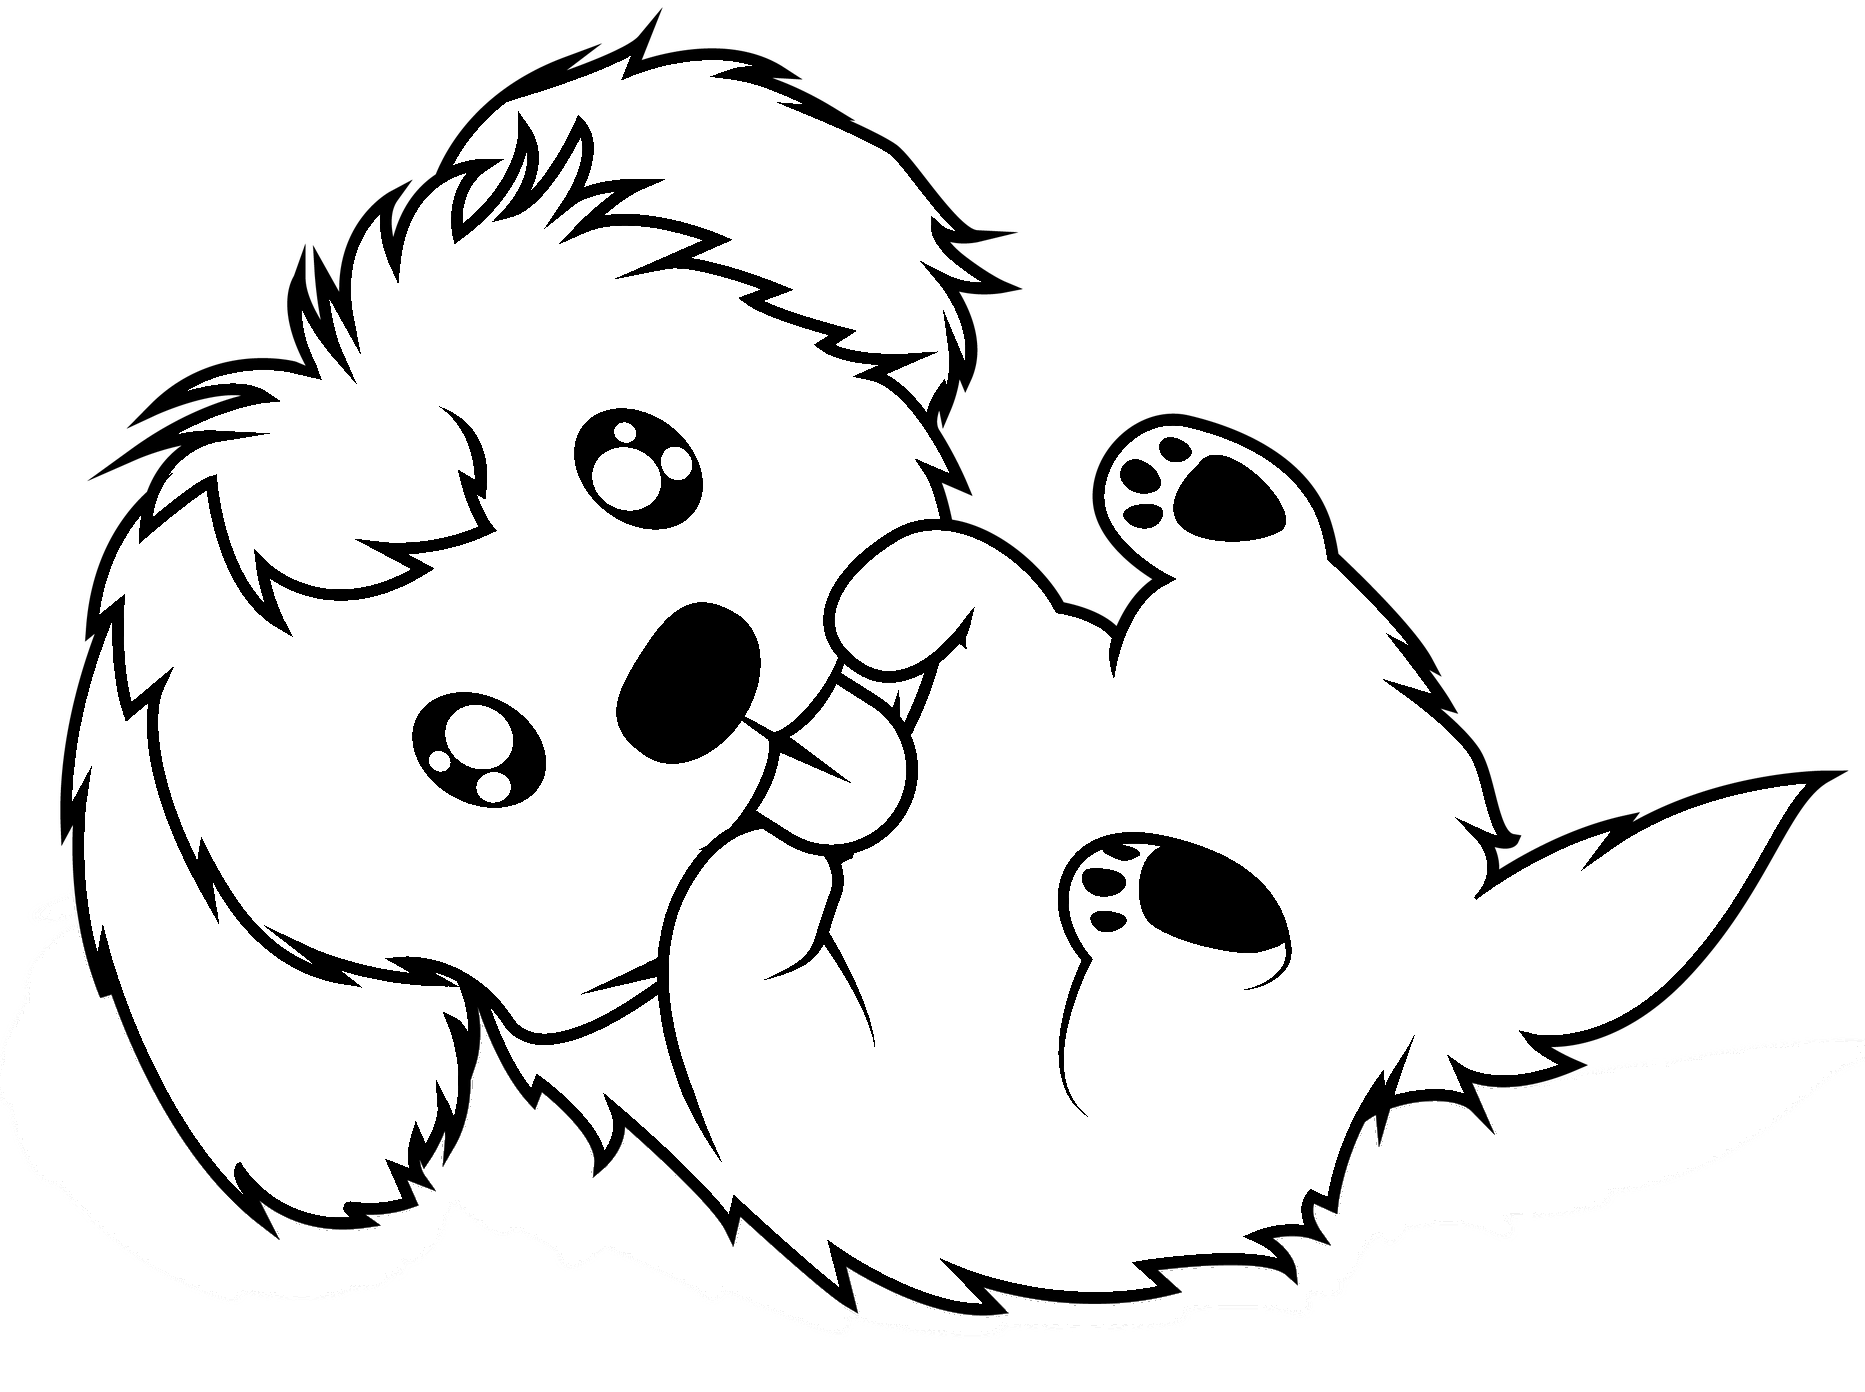 Dibujo para colorear de perro kawaii que quiere abrazar